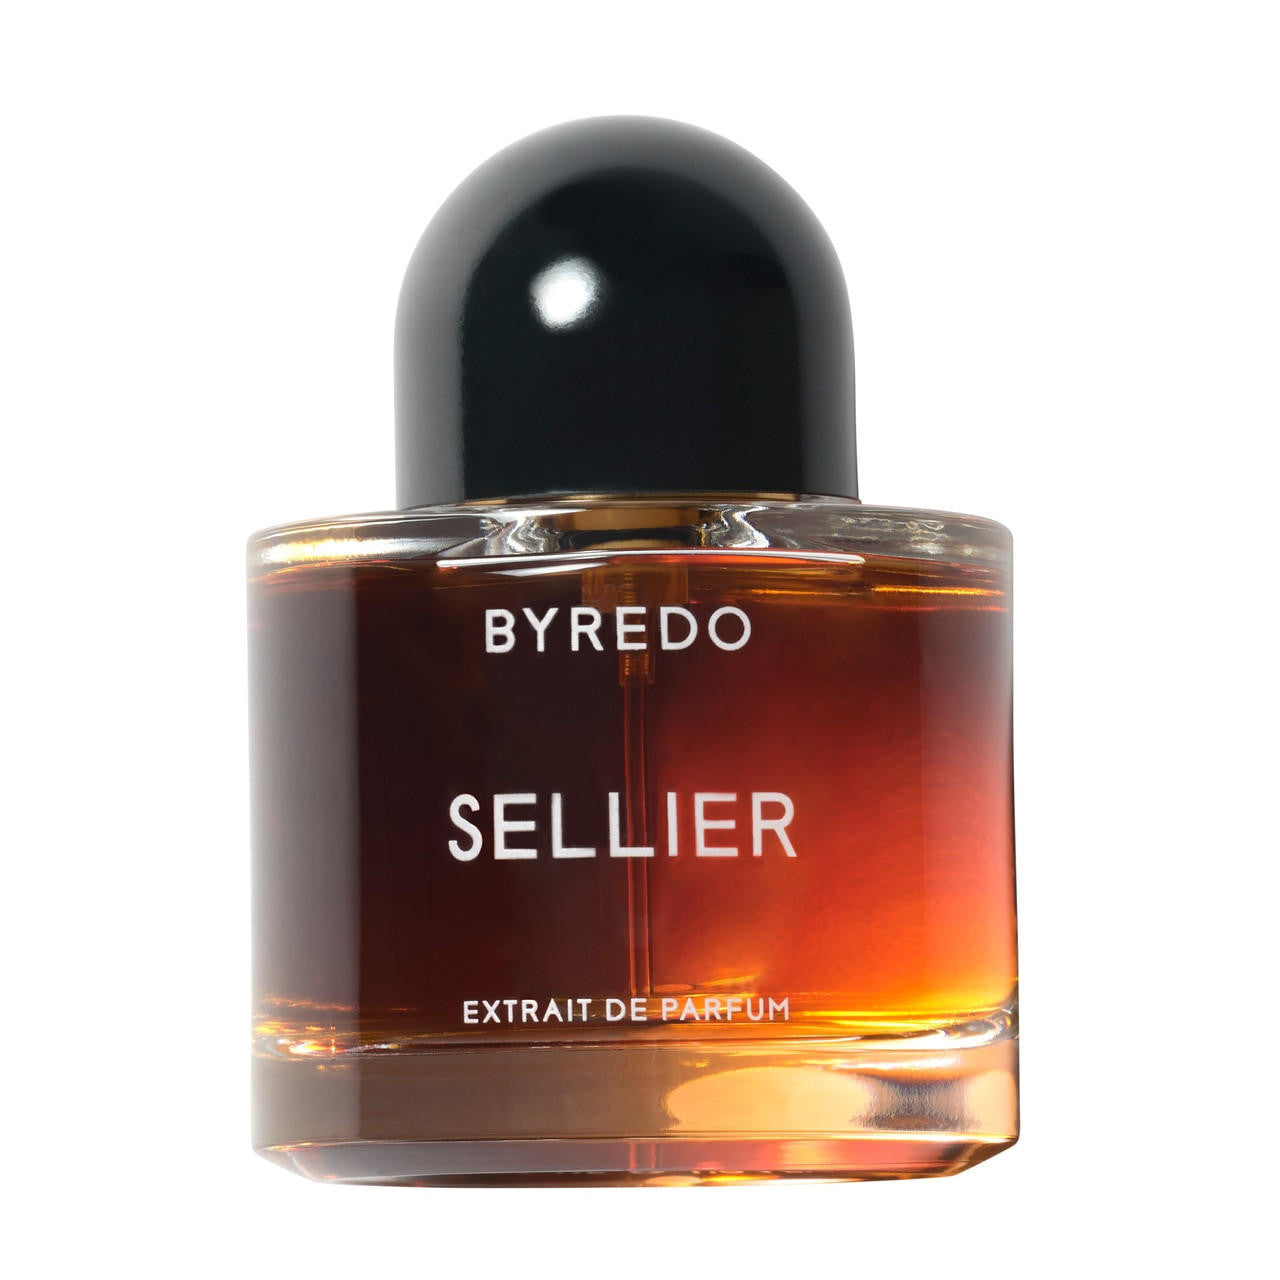  BYREDO  SELLIER Extrait de Parfum 